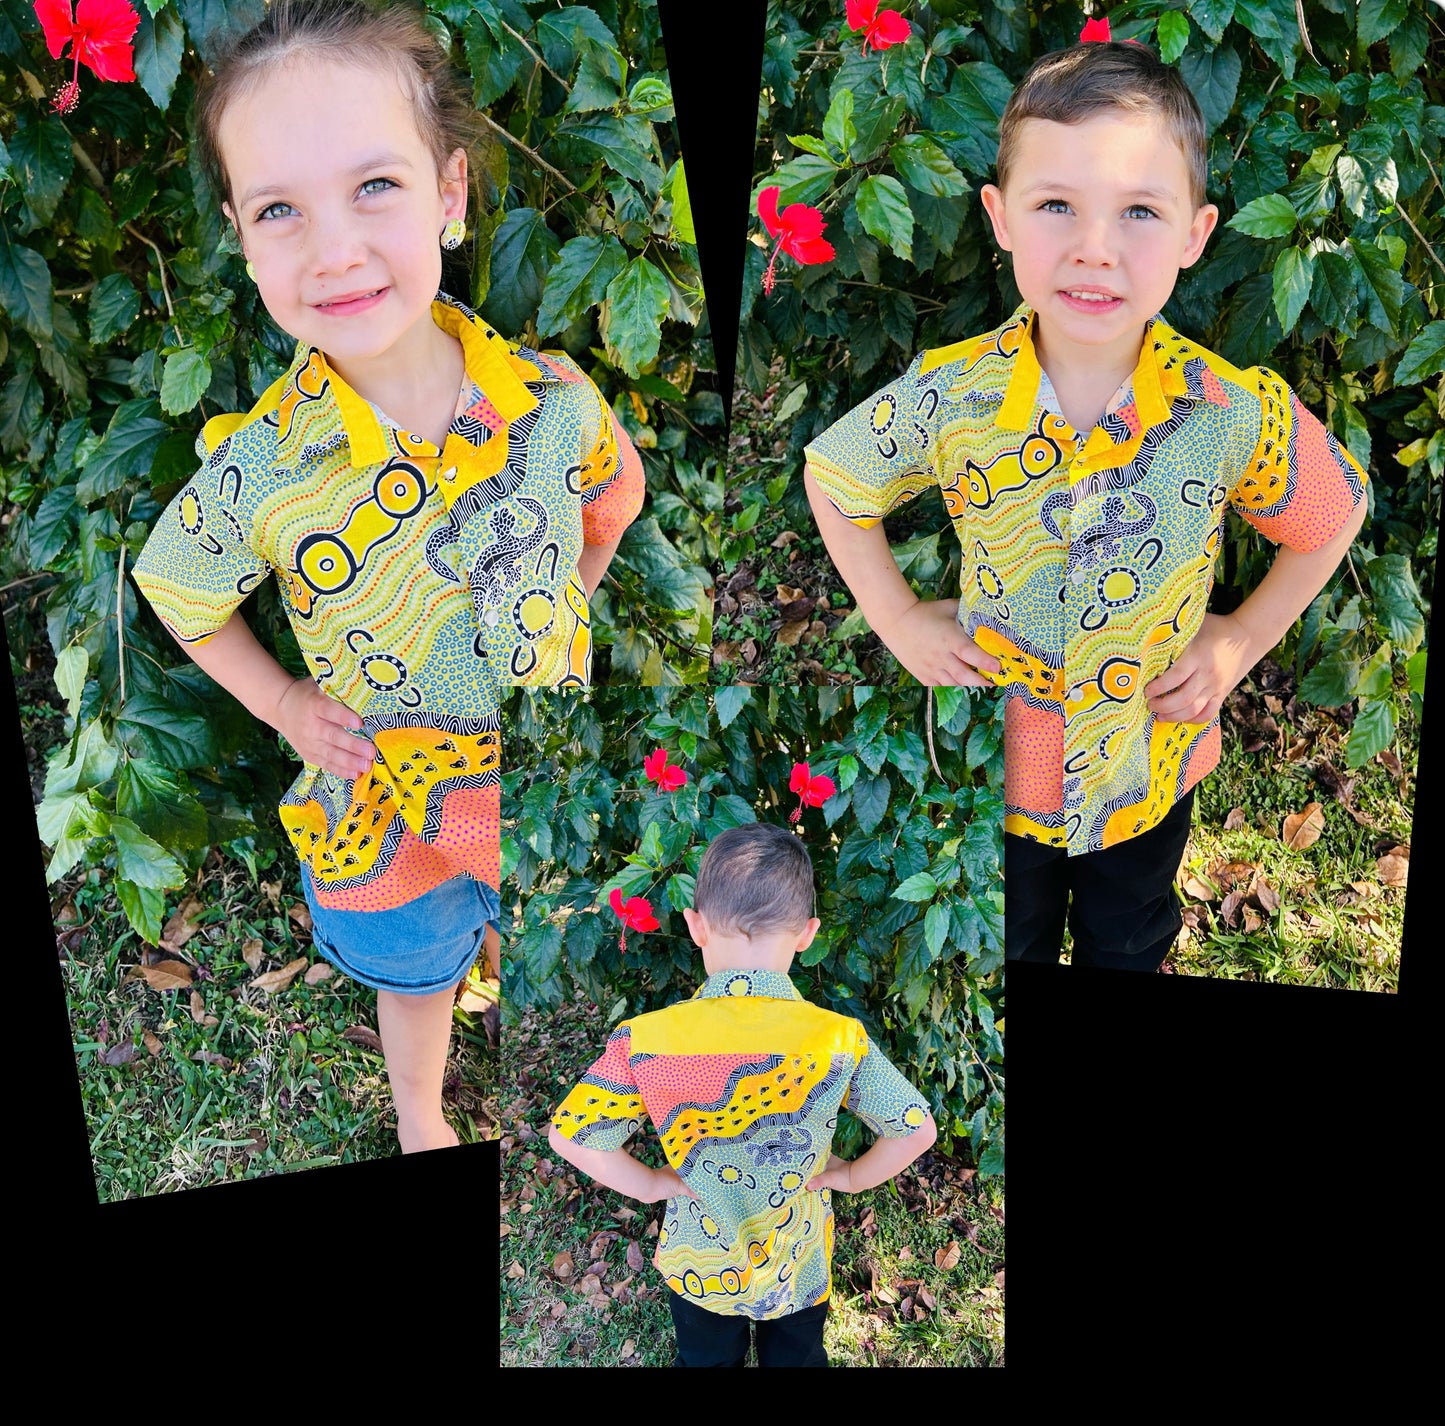 Kids Shirts fabric code #66 yellow